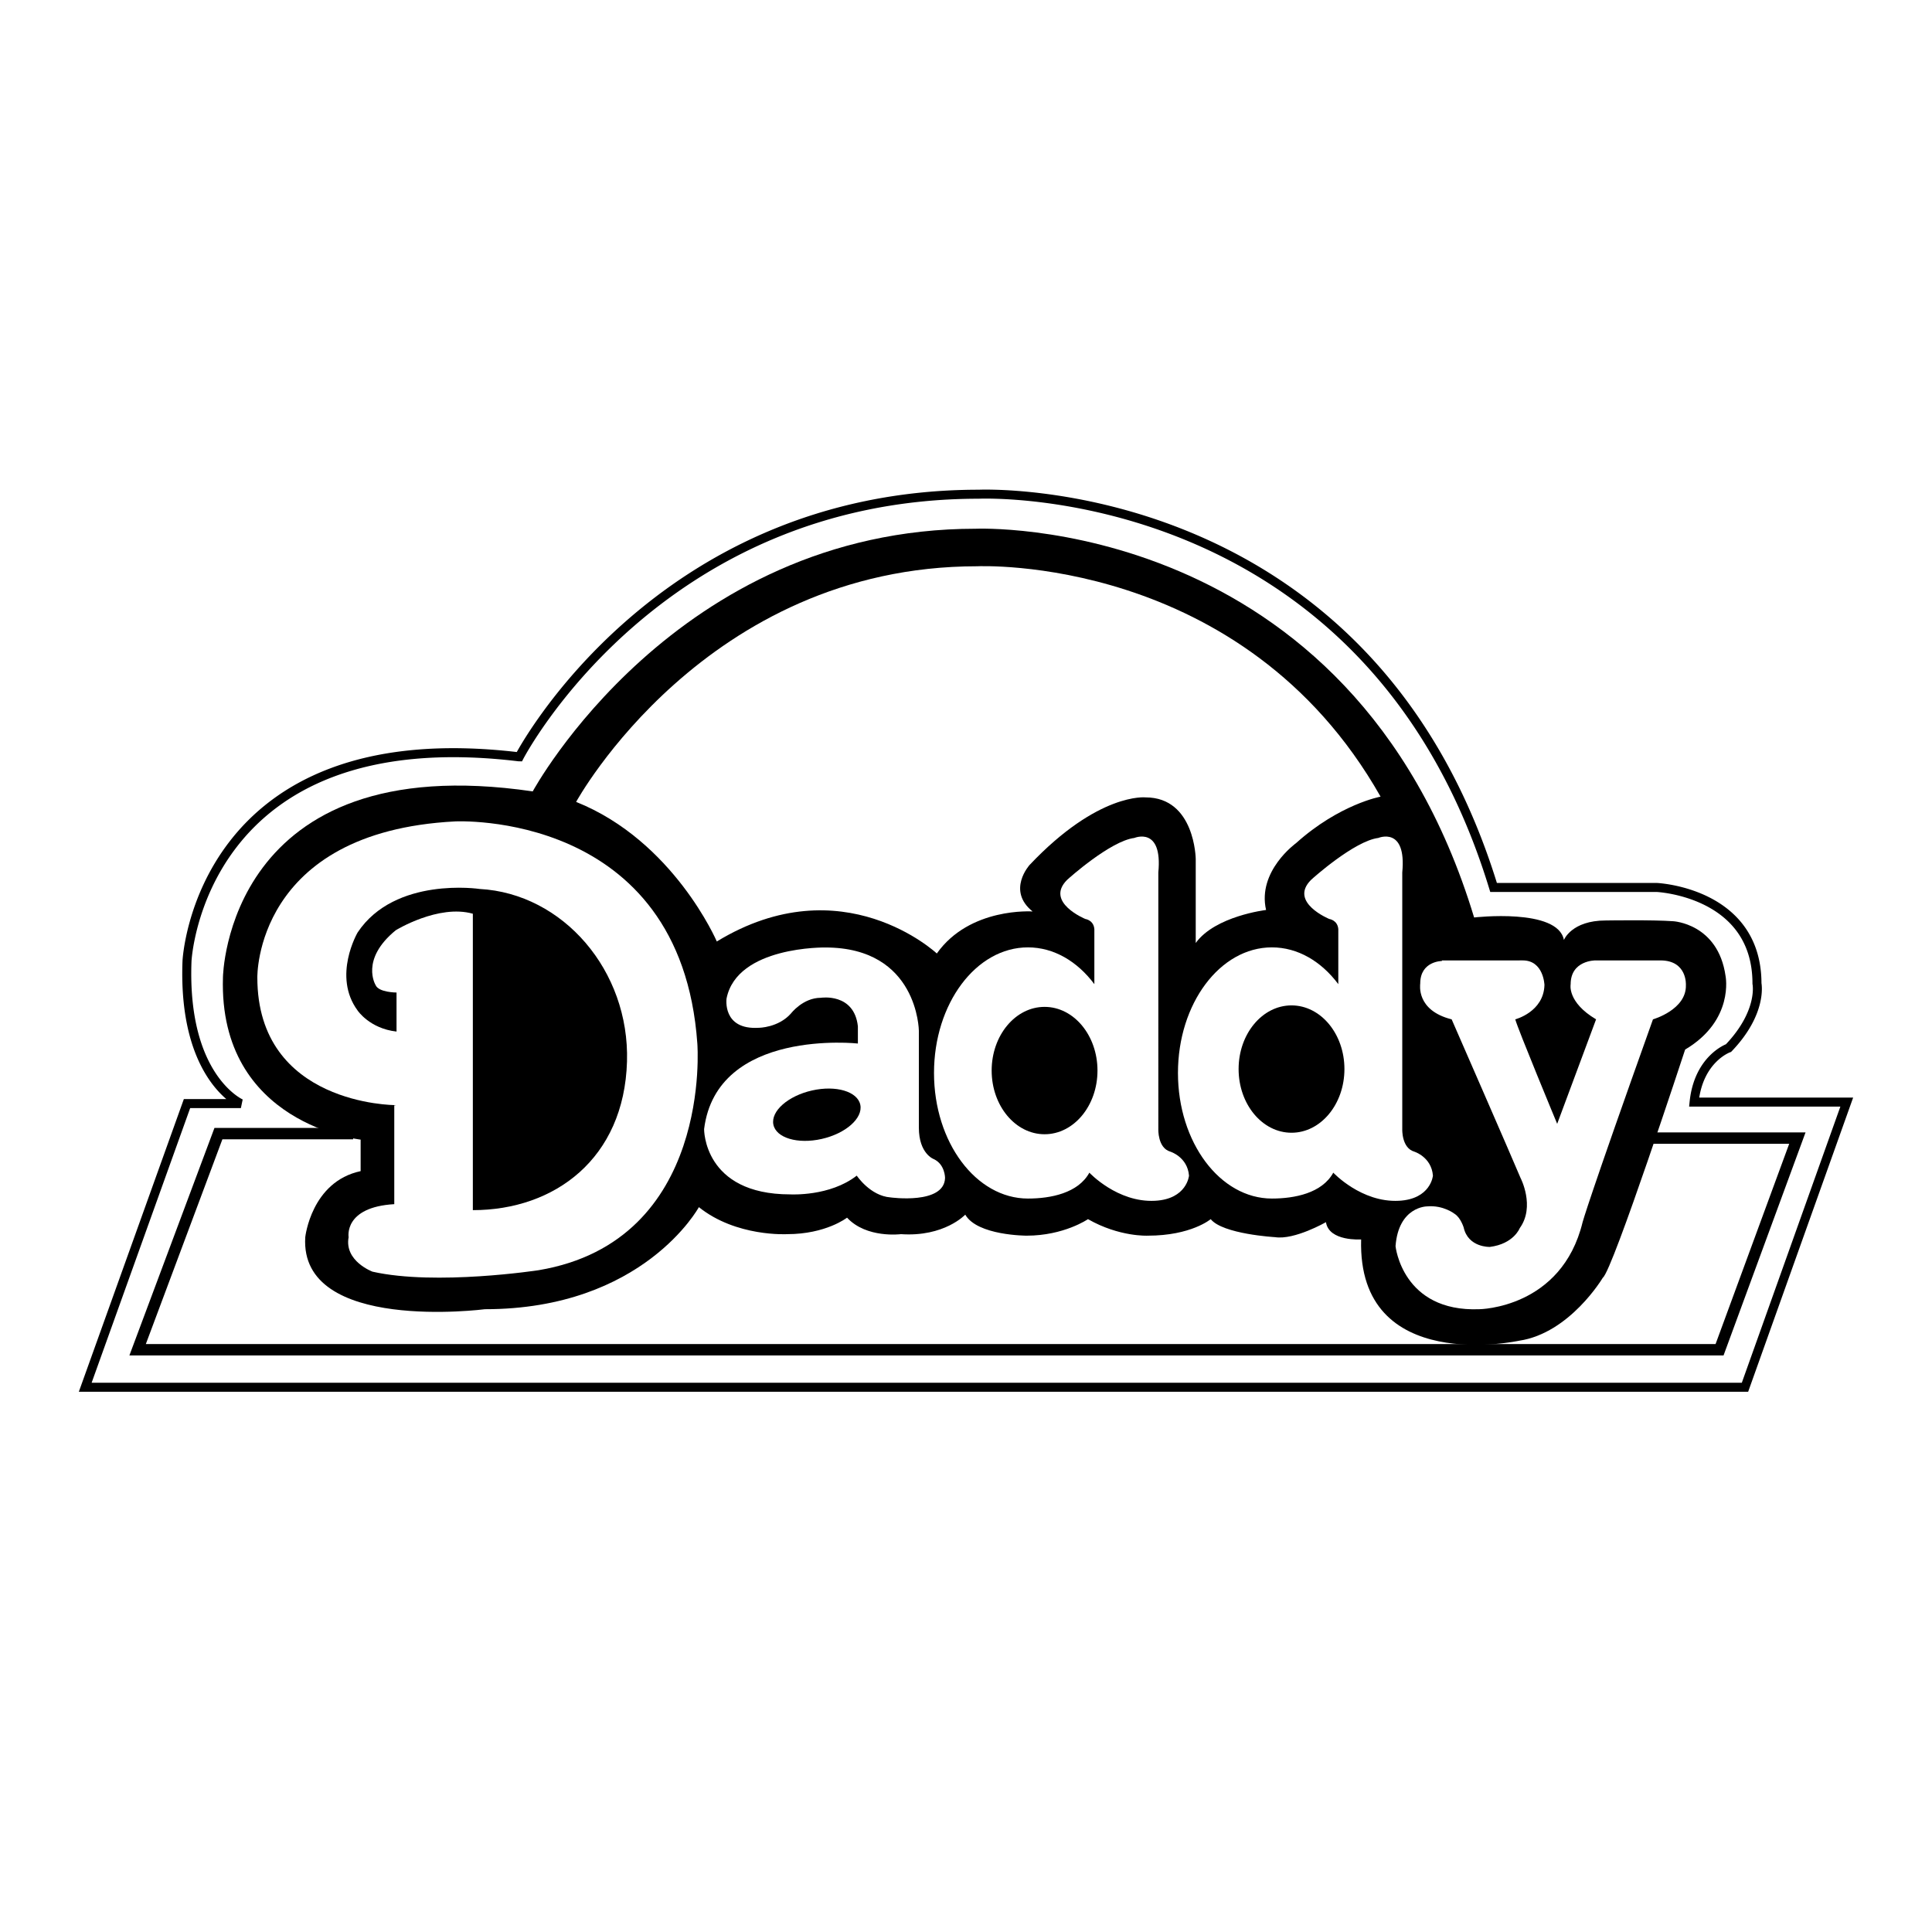 Scrub Daddy logo colors